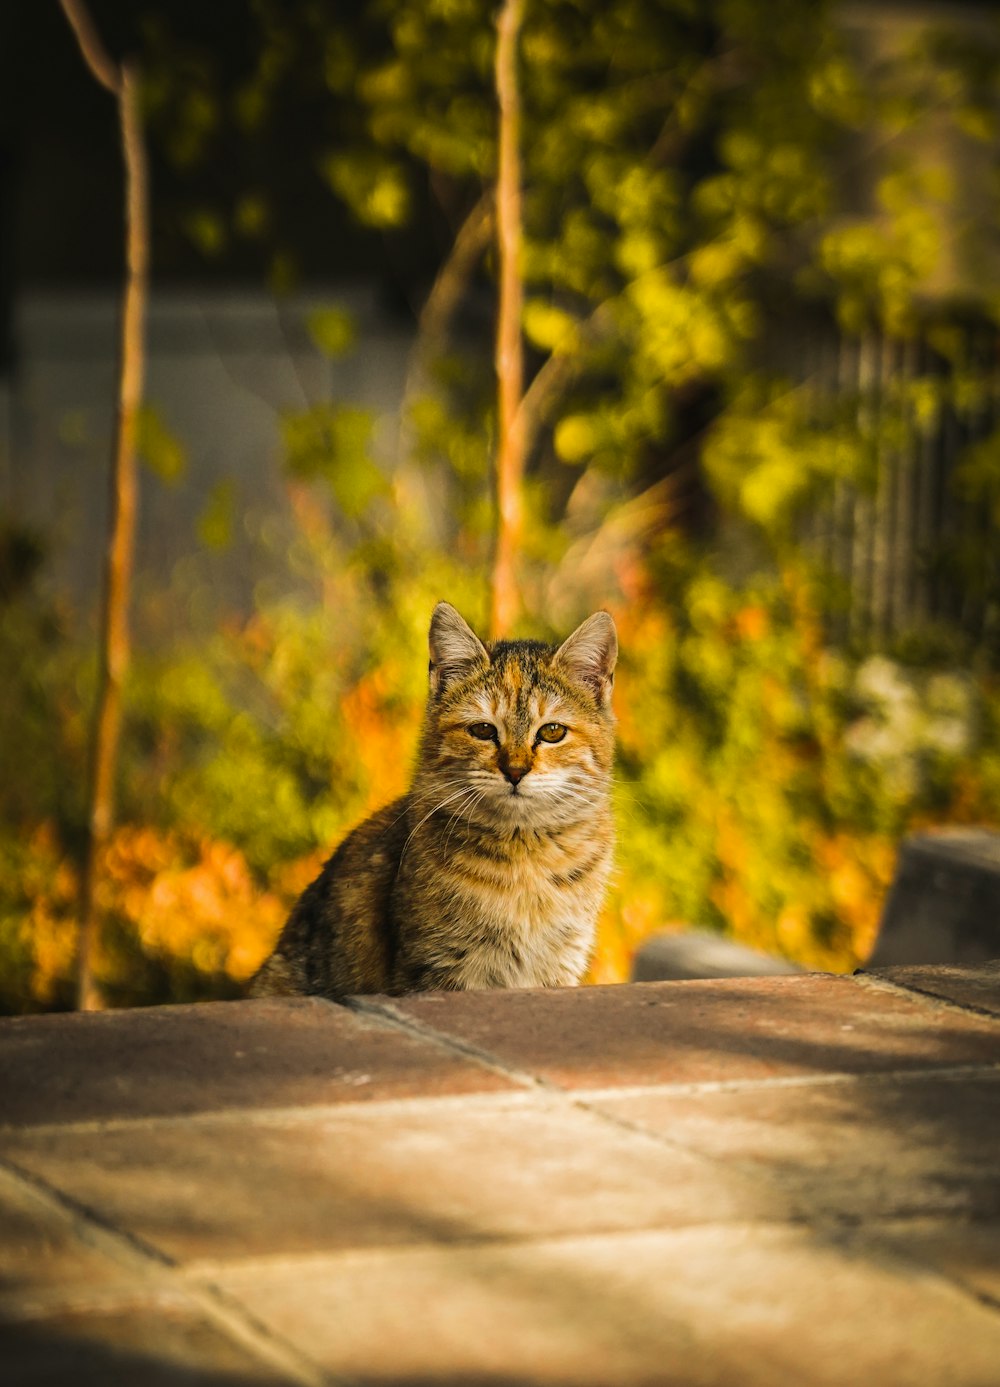 gato atigrado marrón sentado en una superficie de concreto marrón durante el día